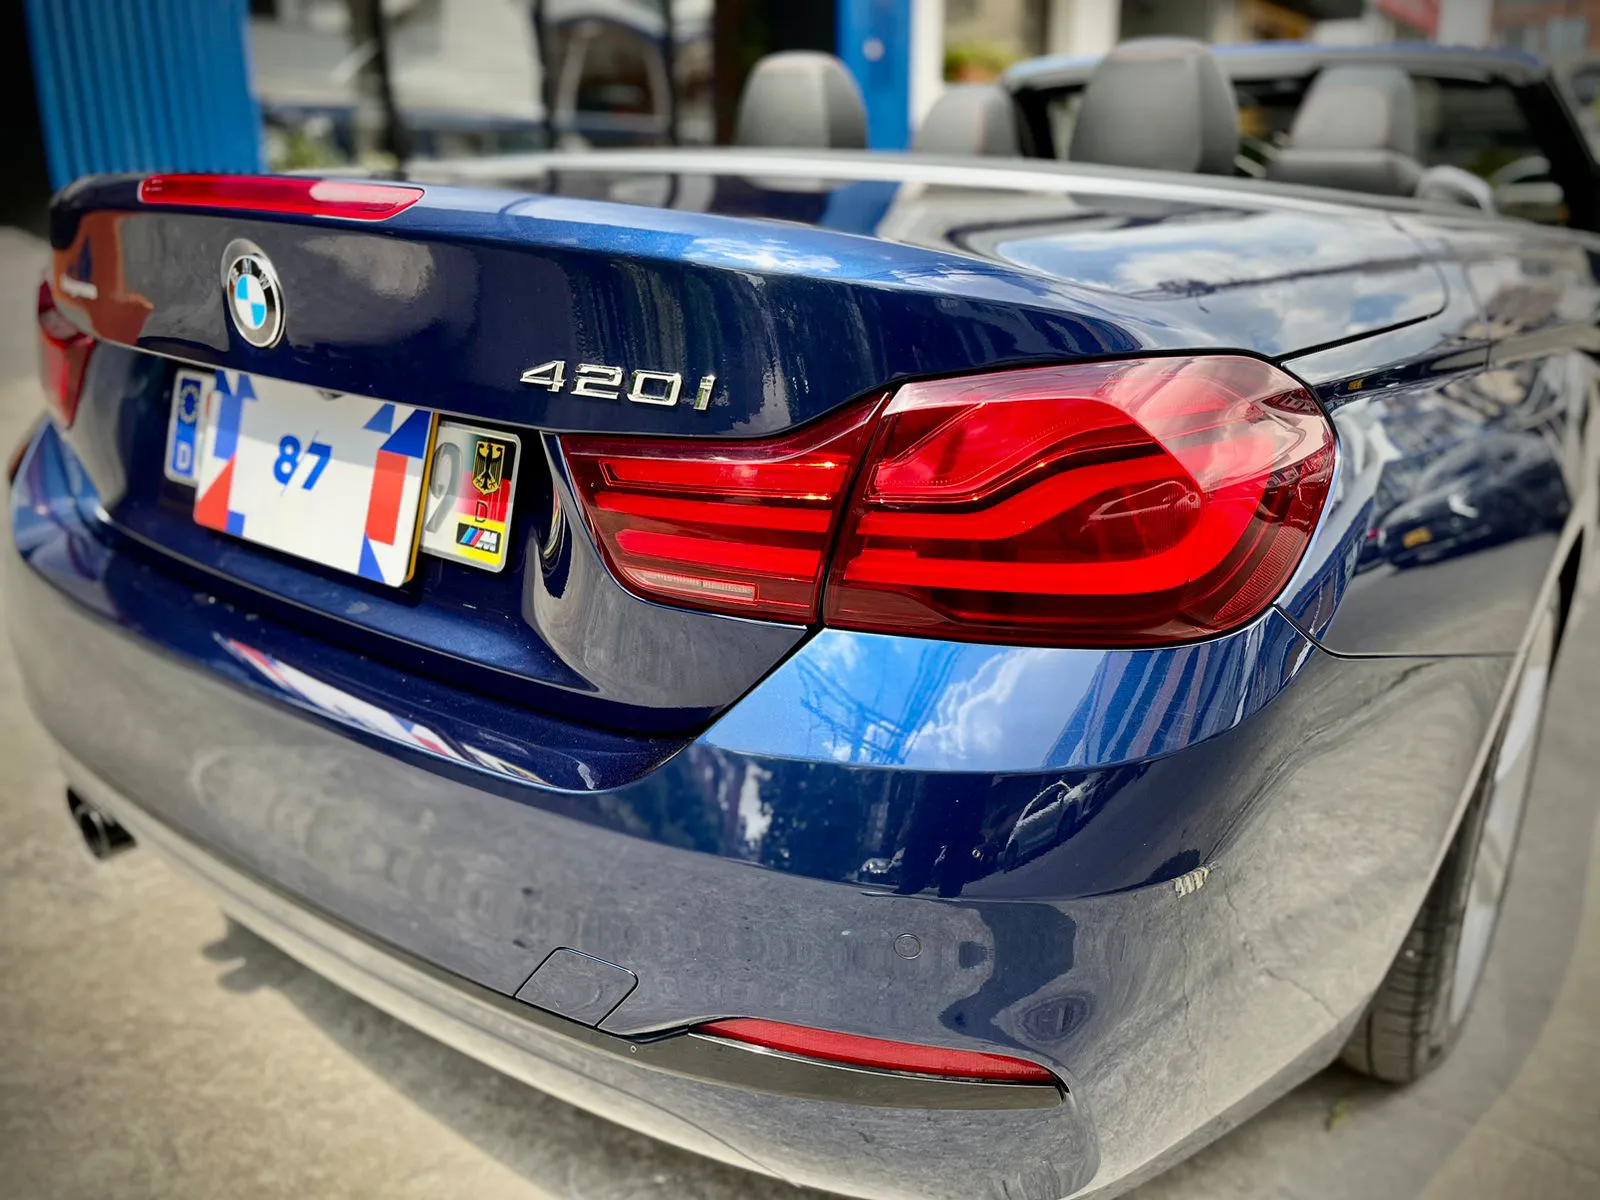 BMW CARROS 420i F33 Cabriolet Executive 2020